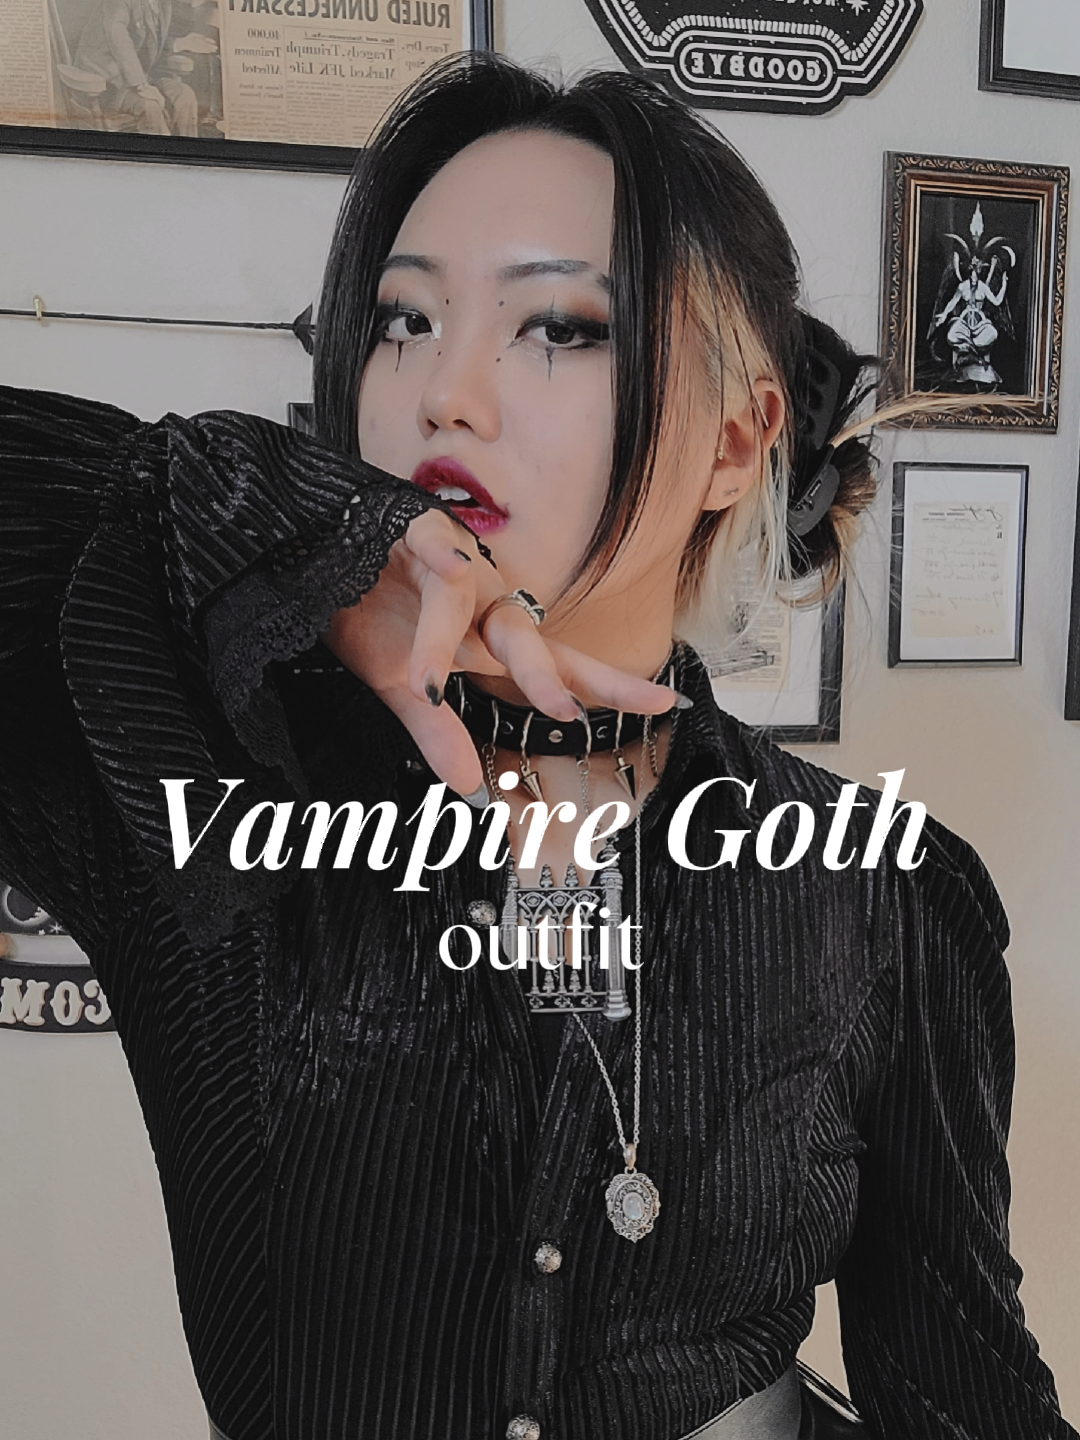 Vampire Gothic Lady #gothic #goth Art Print by Brandon Fisher